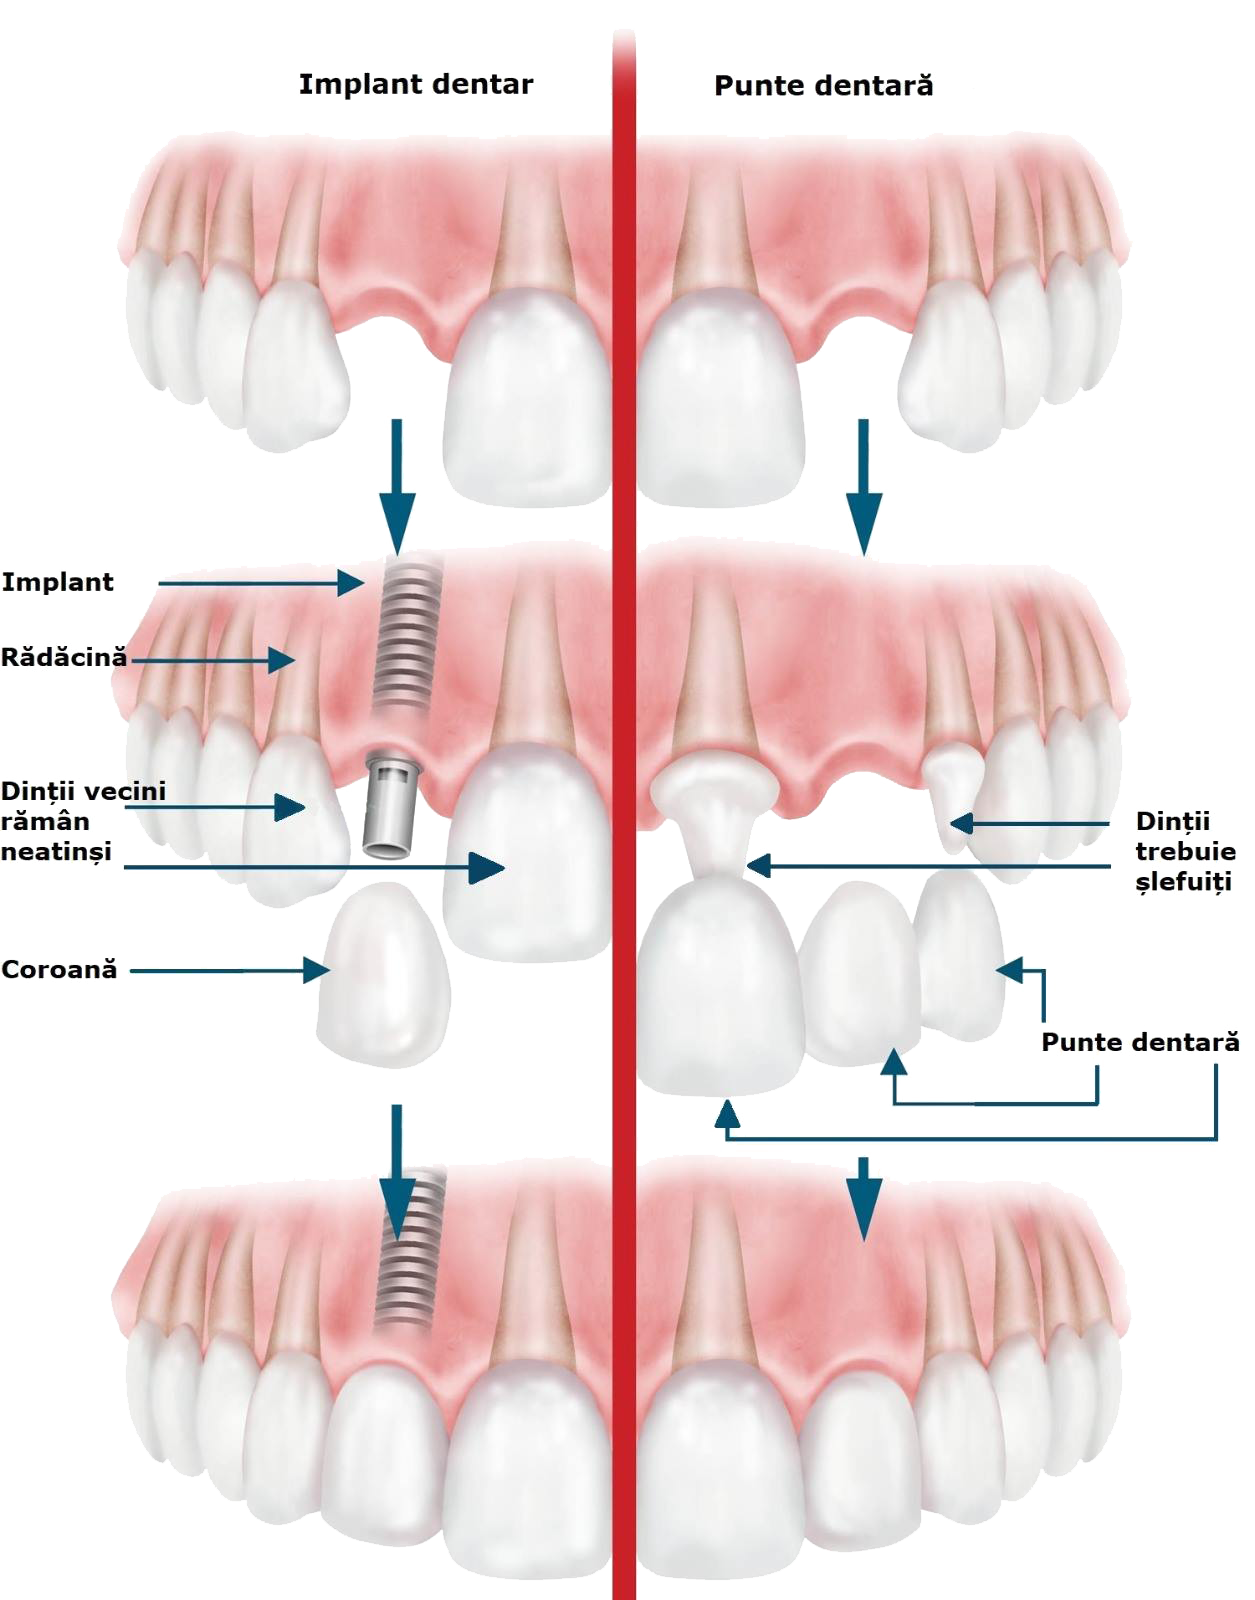 implant dentar sau punte dentara